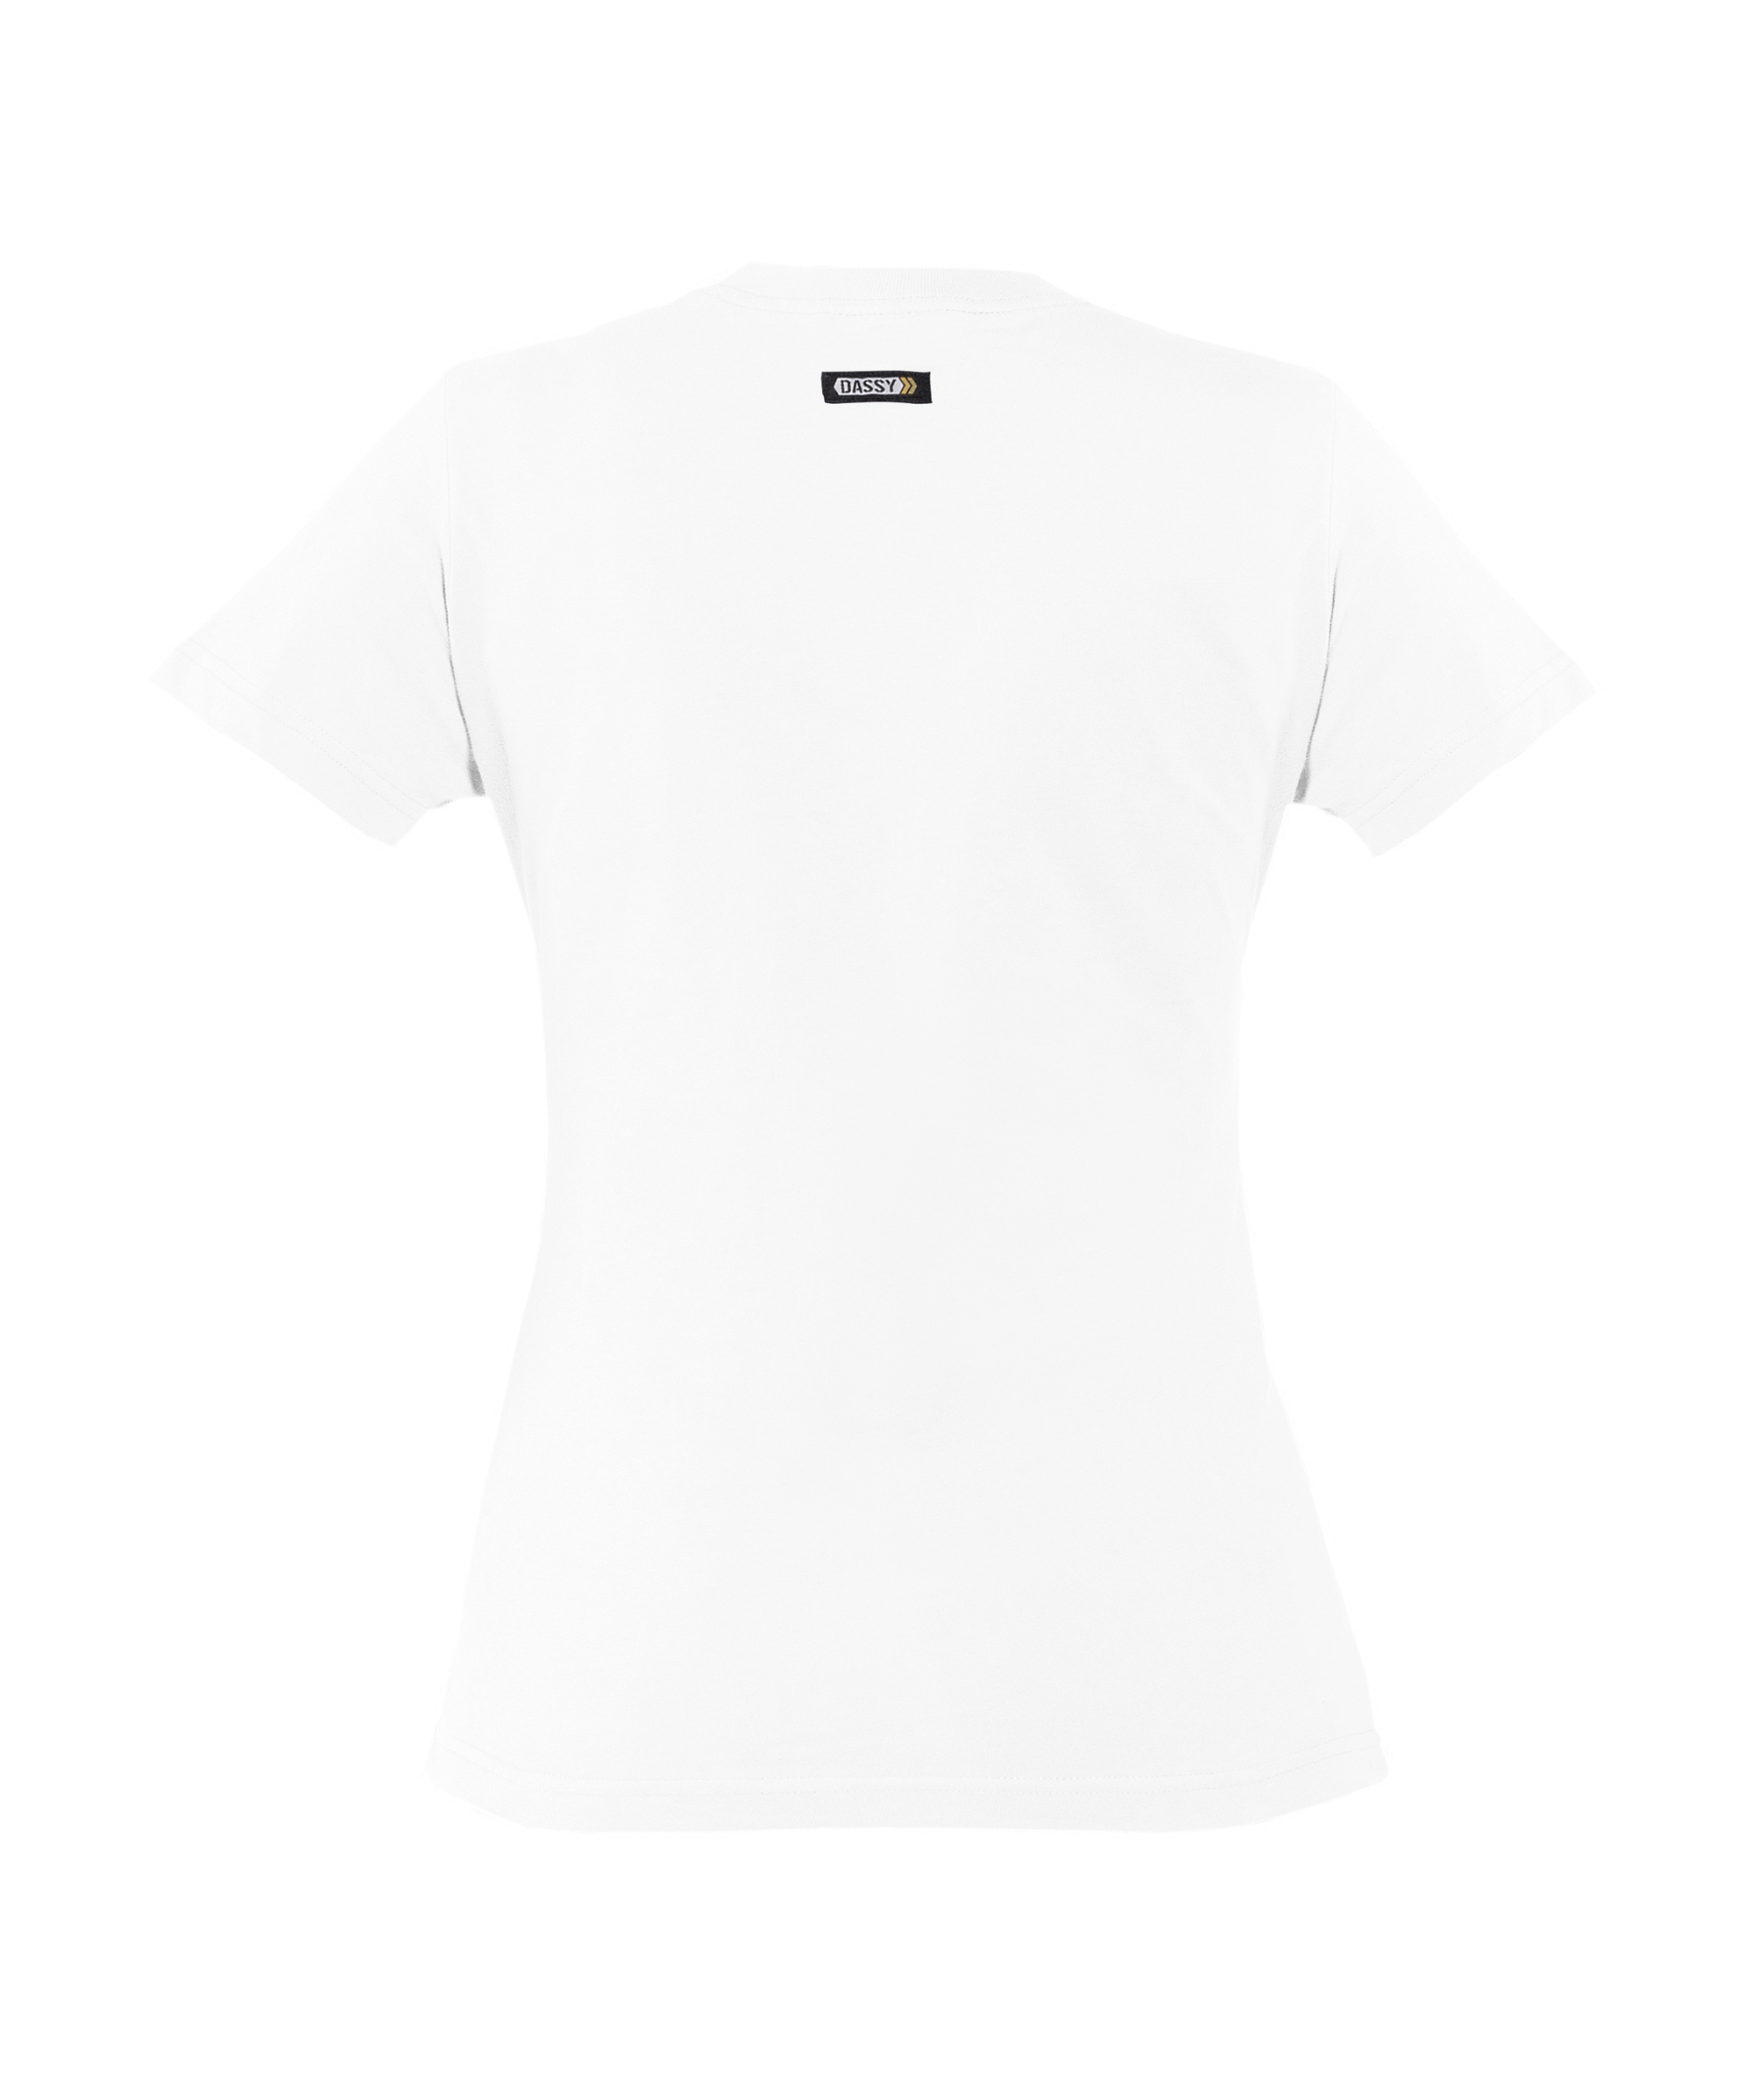 oscar-women_t-shirt_white_back.jpg